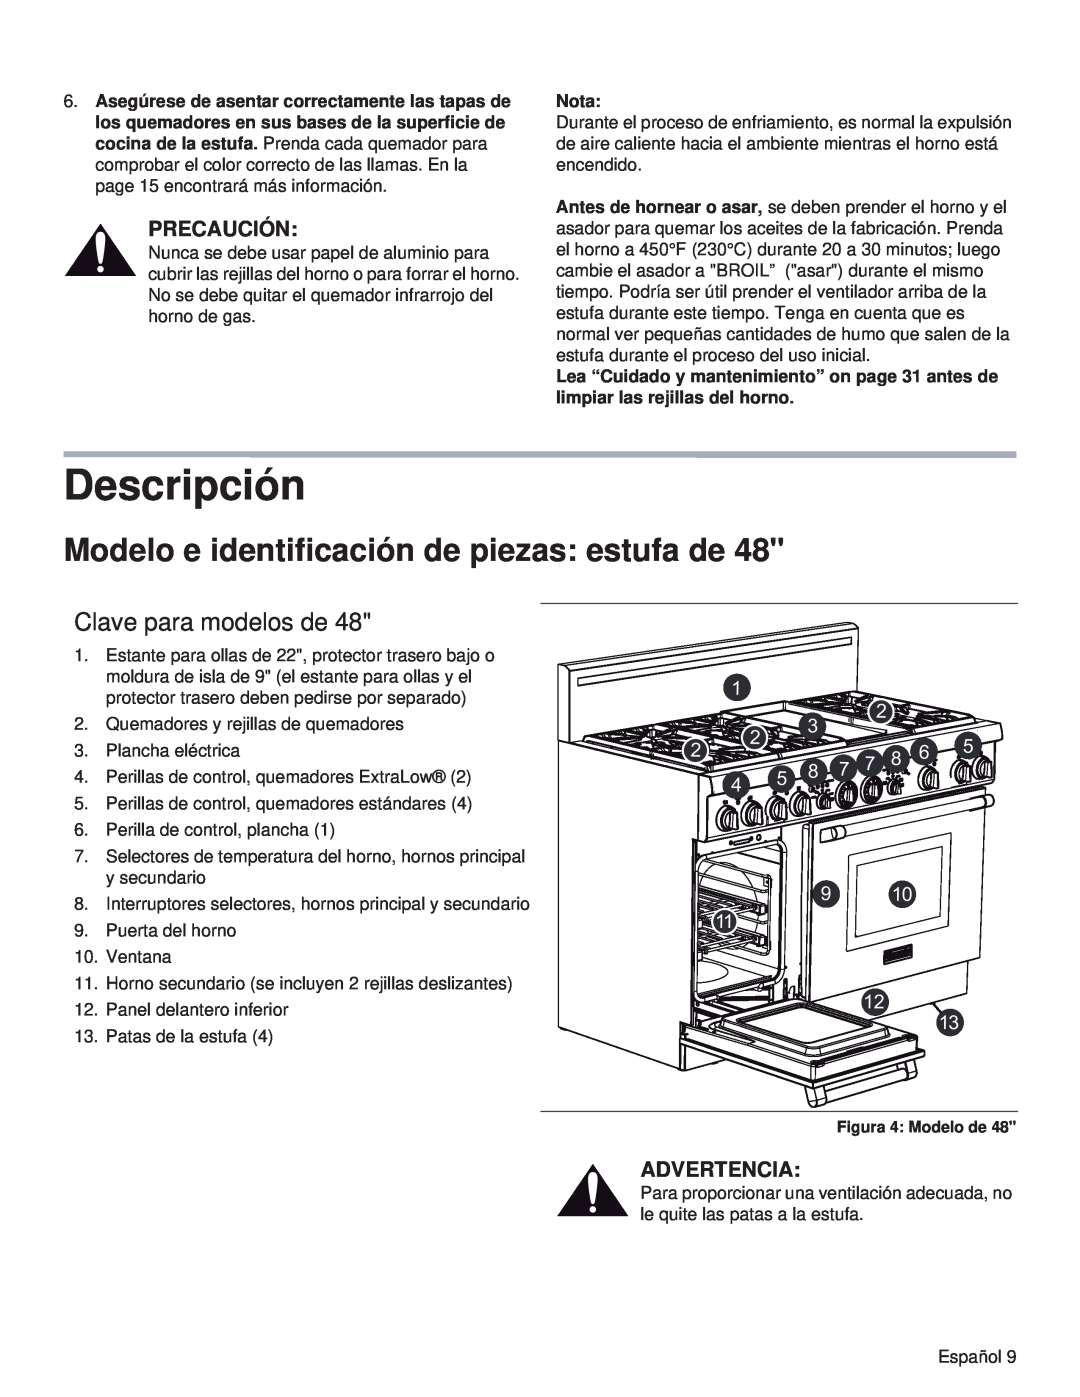 Thermador PRL48 Descripción, Modelo e identificación de piezas estufa de, Clave para modelos de, Precaución, Advertencia 